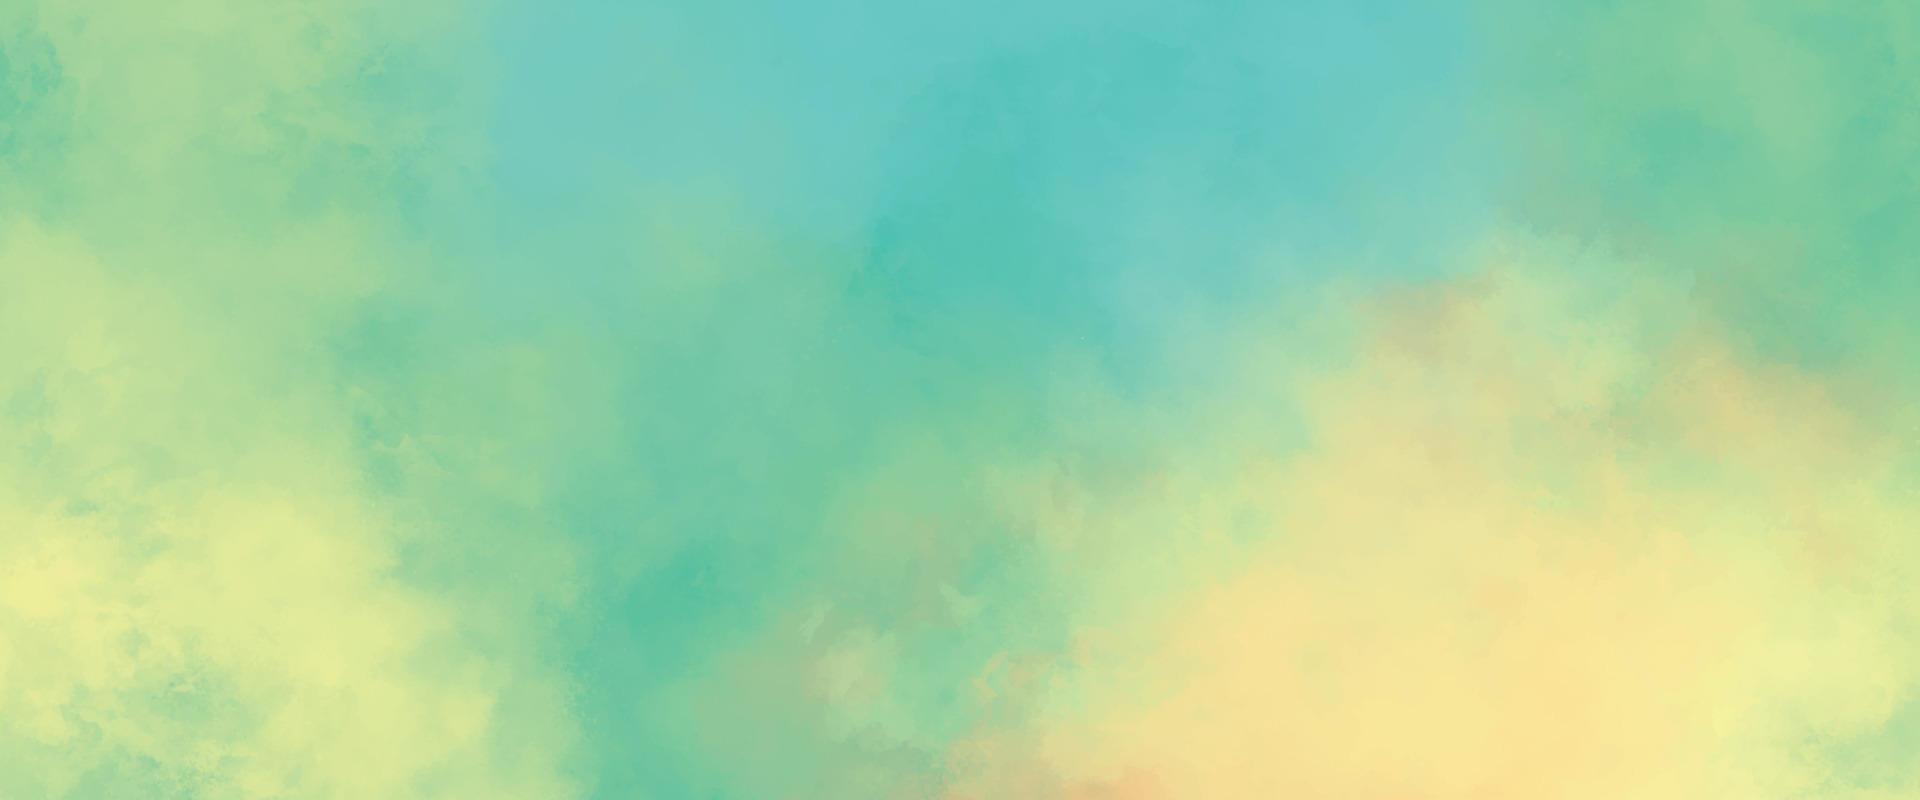 abstrakte Aquarellfarbe Hintergrund. schönes blaues grünes und gelbes aquarell-spritzdesign. bunte einfarbige grüntöne aquarelltexturen. papierstrukturierte aquarell-leinwand für modernes kreatives design vektor